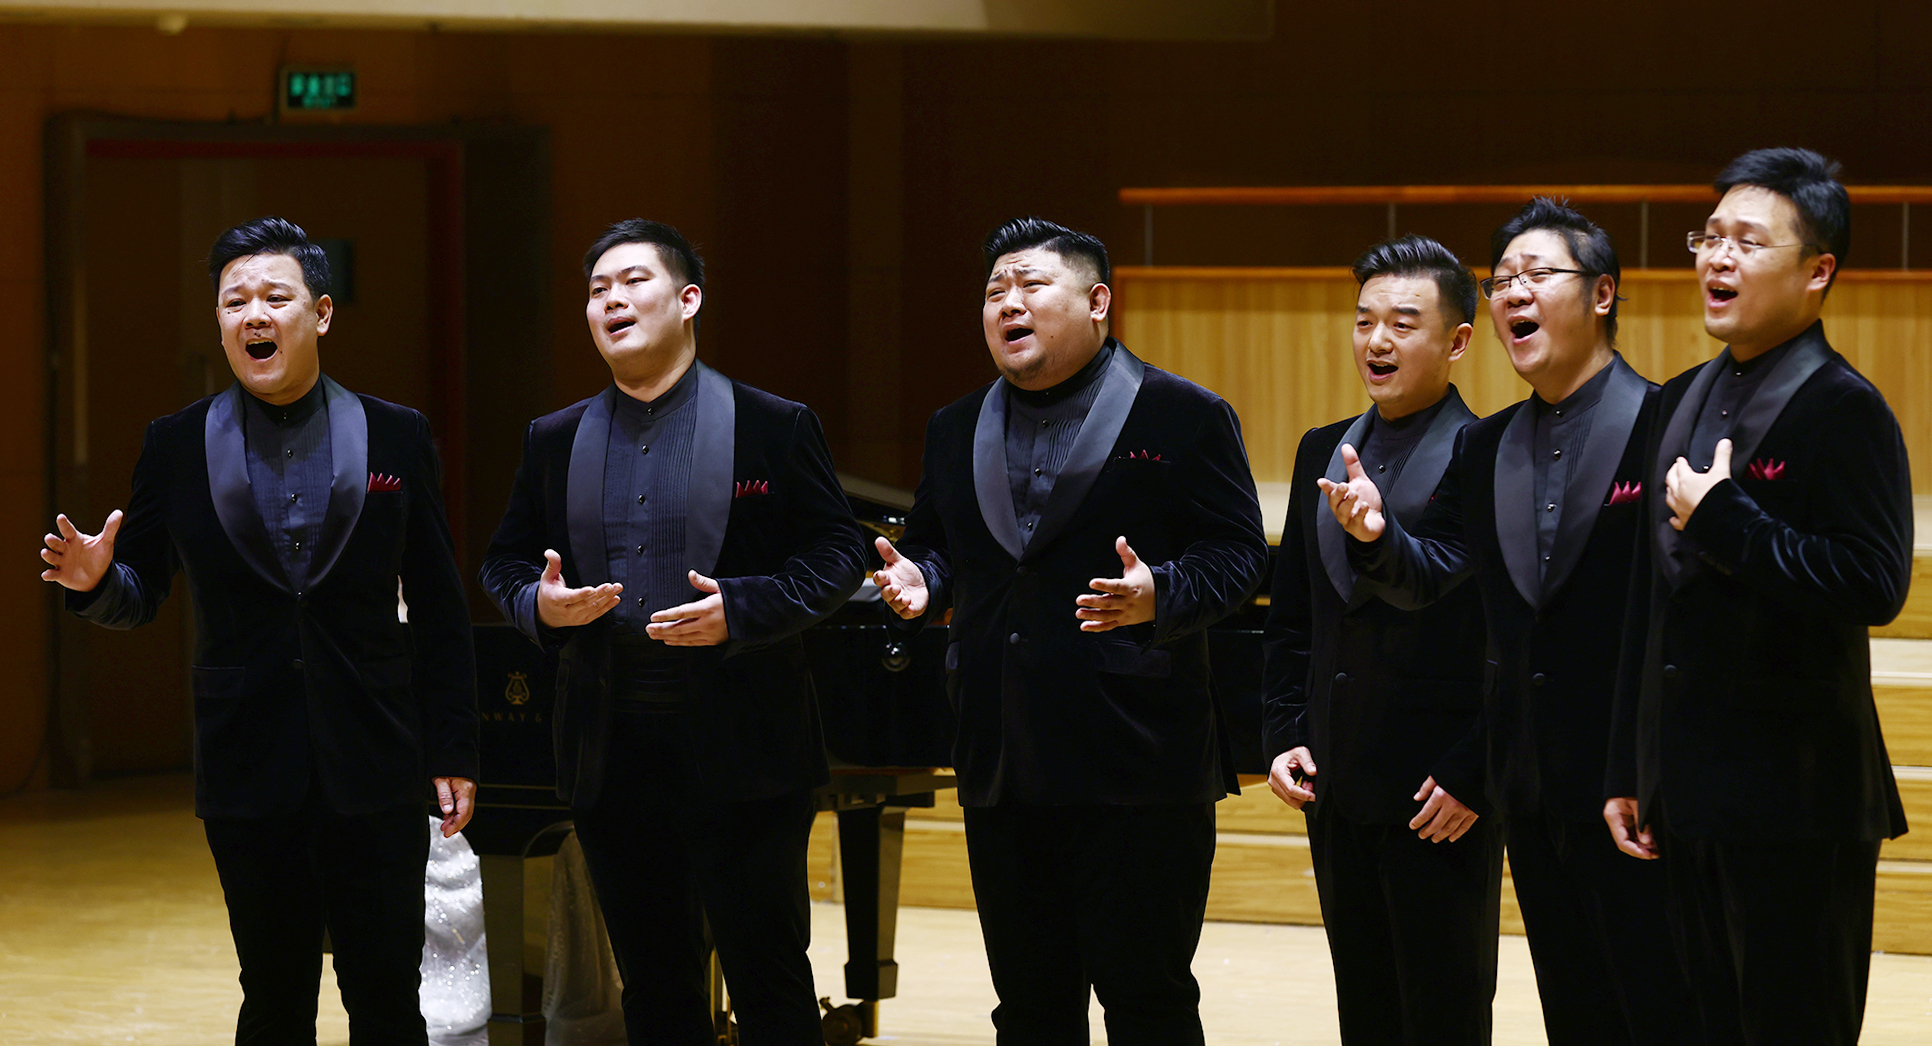 中国首支男声六重唱乐团"金石"走红"哥几个"都是国交专业歌唱家